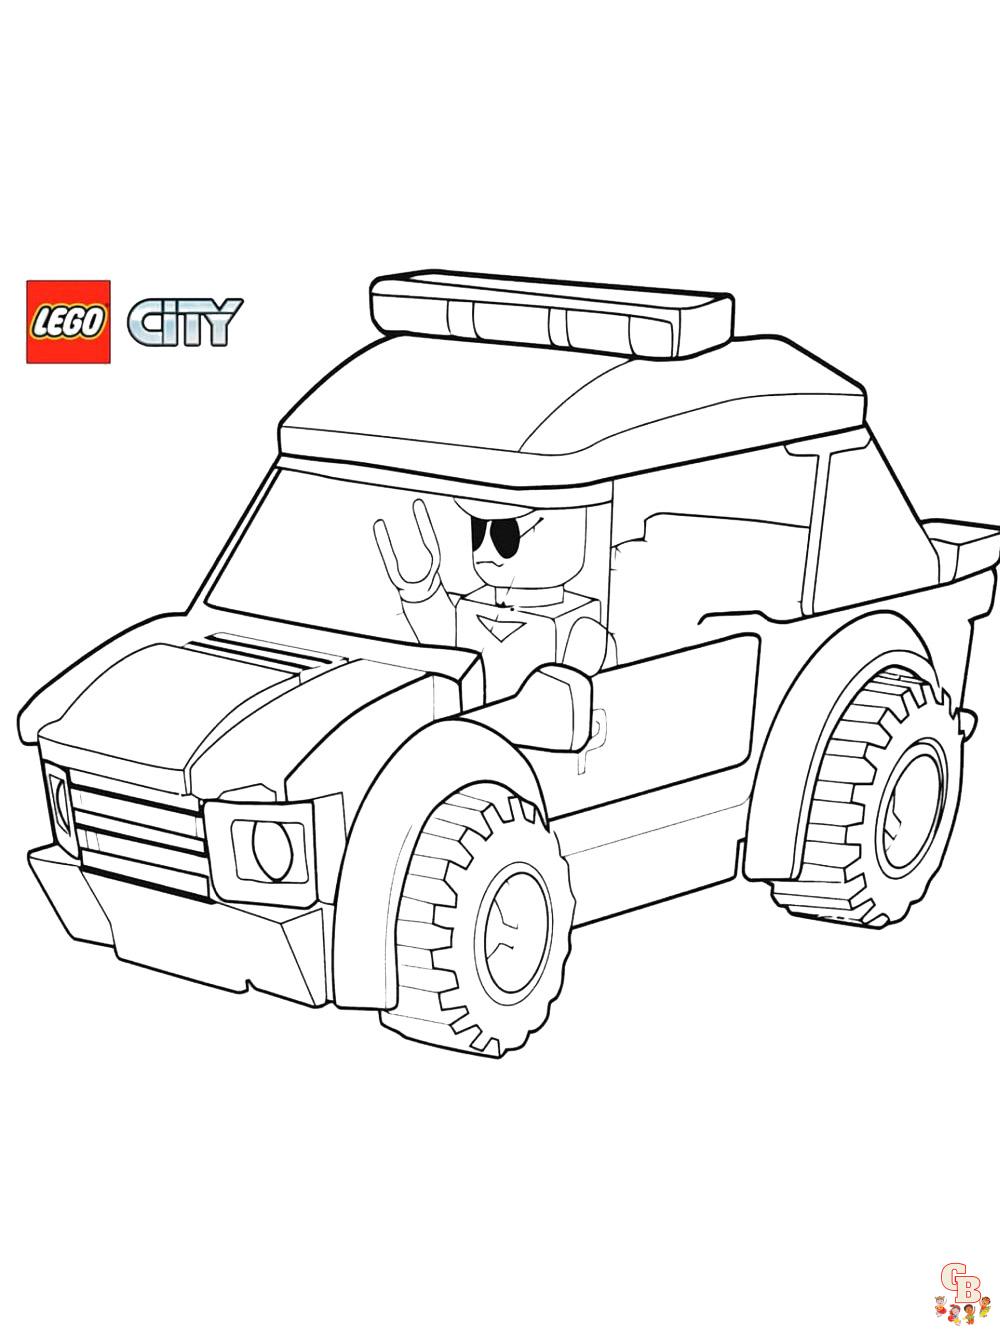 Страницы для раскрашивания Лего Сити